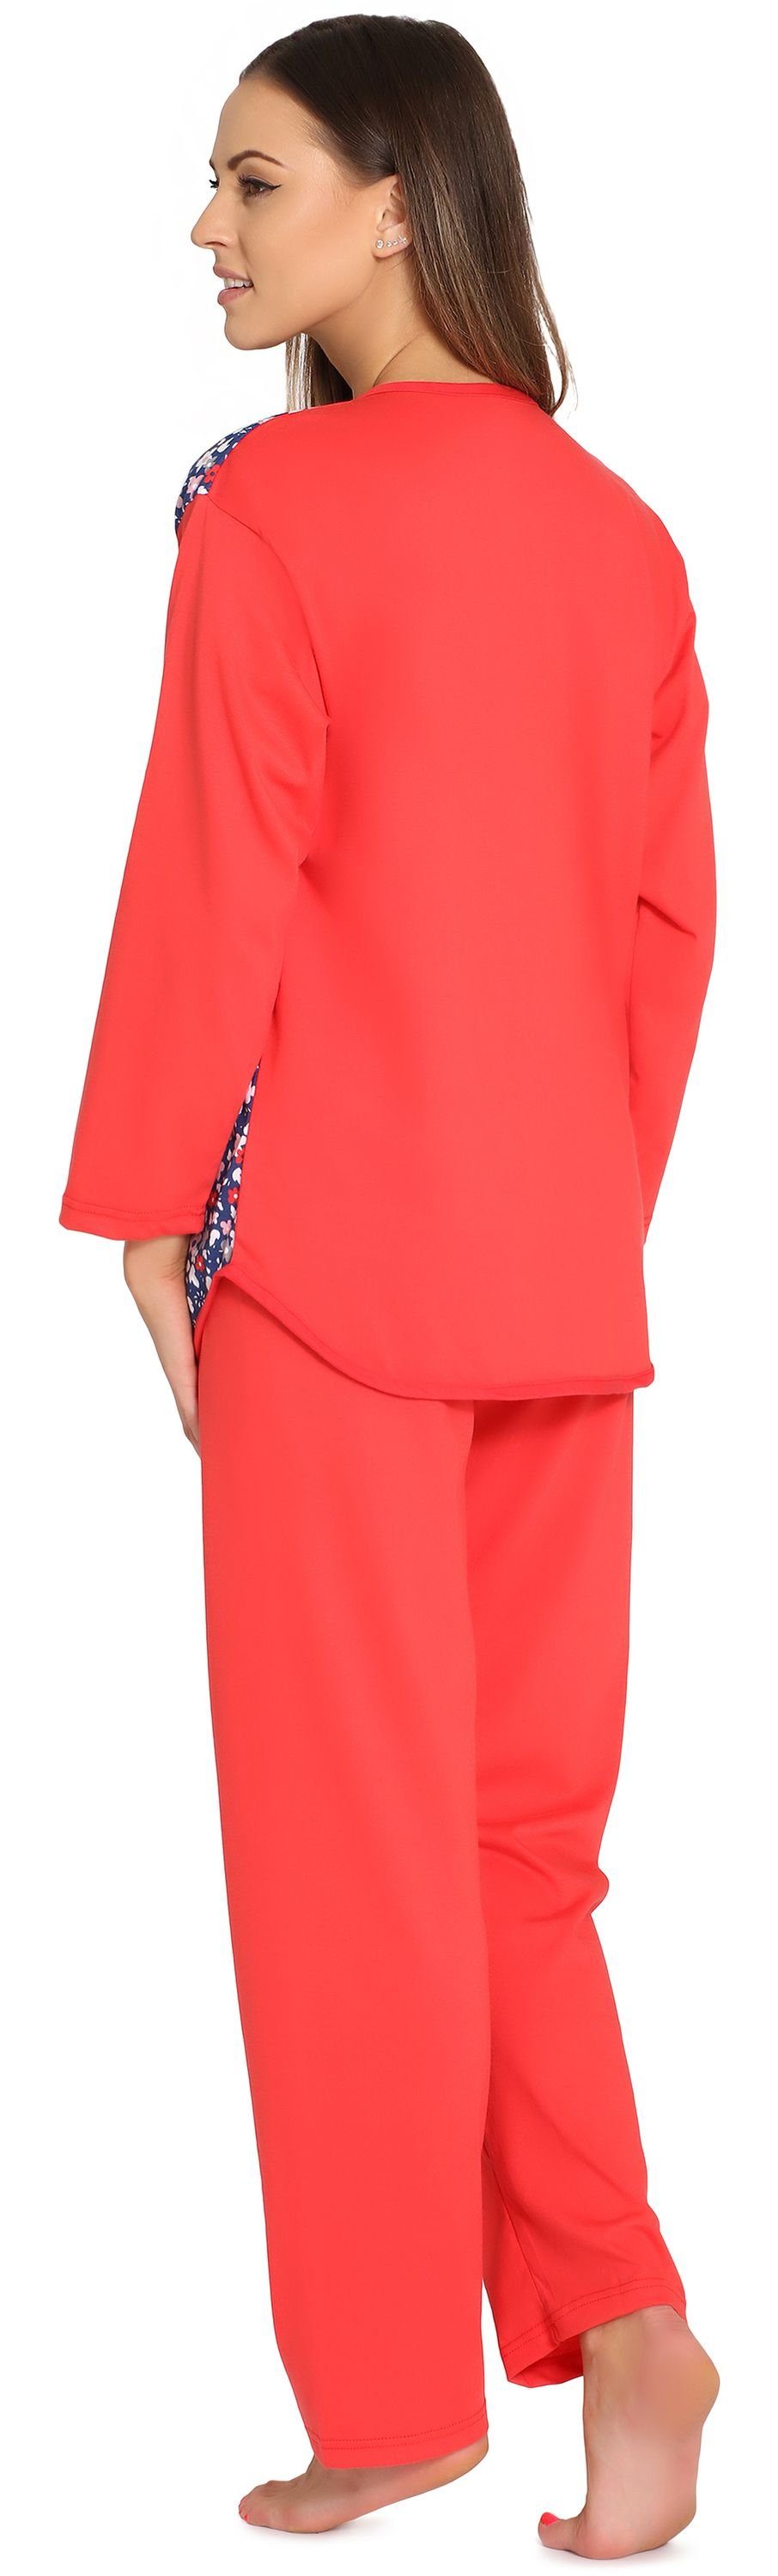 Merry Style Schlafanzug Damen Schlafanzug MSDR5006 Knopfleiste Coral/Blumen